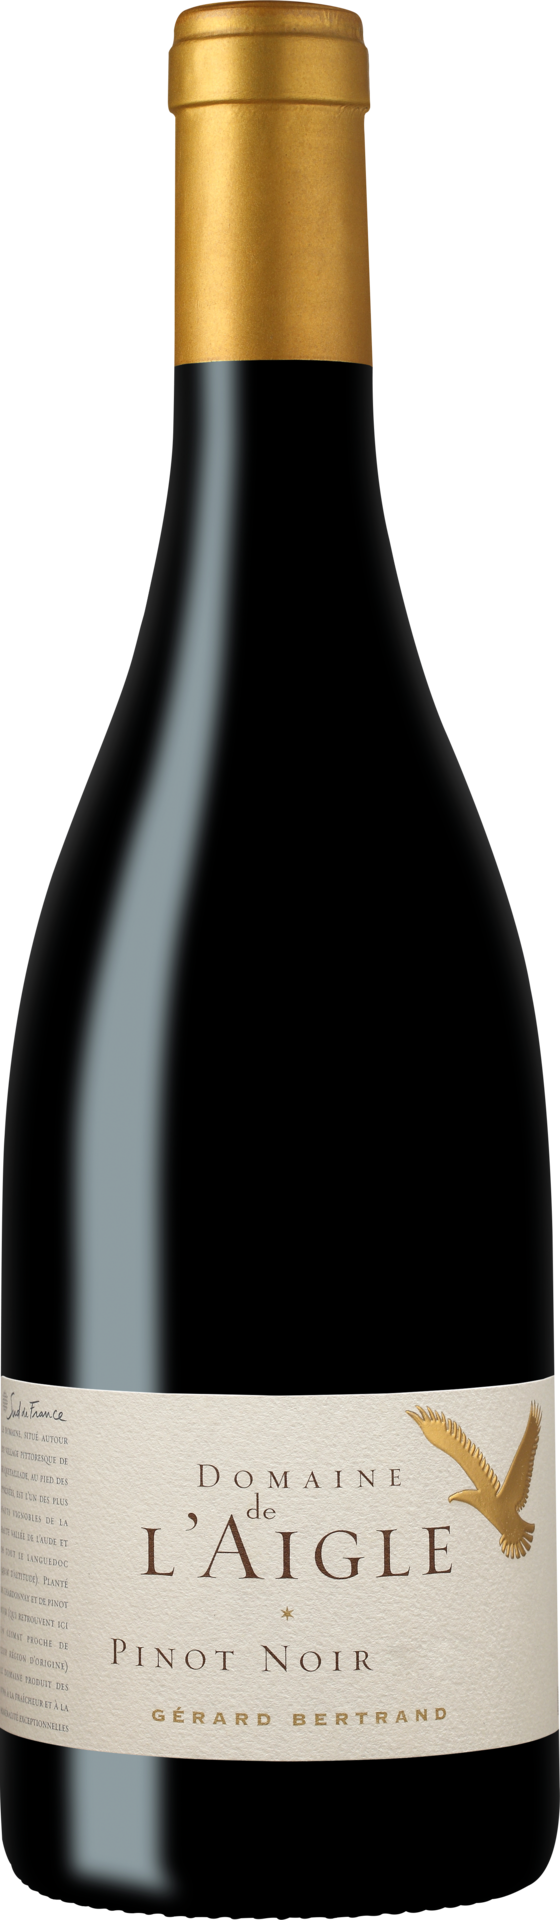 Domaine de l'Aigle Pinot Noir